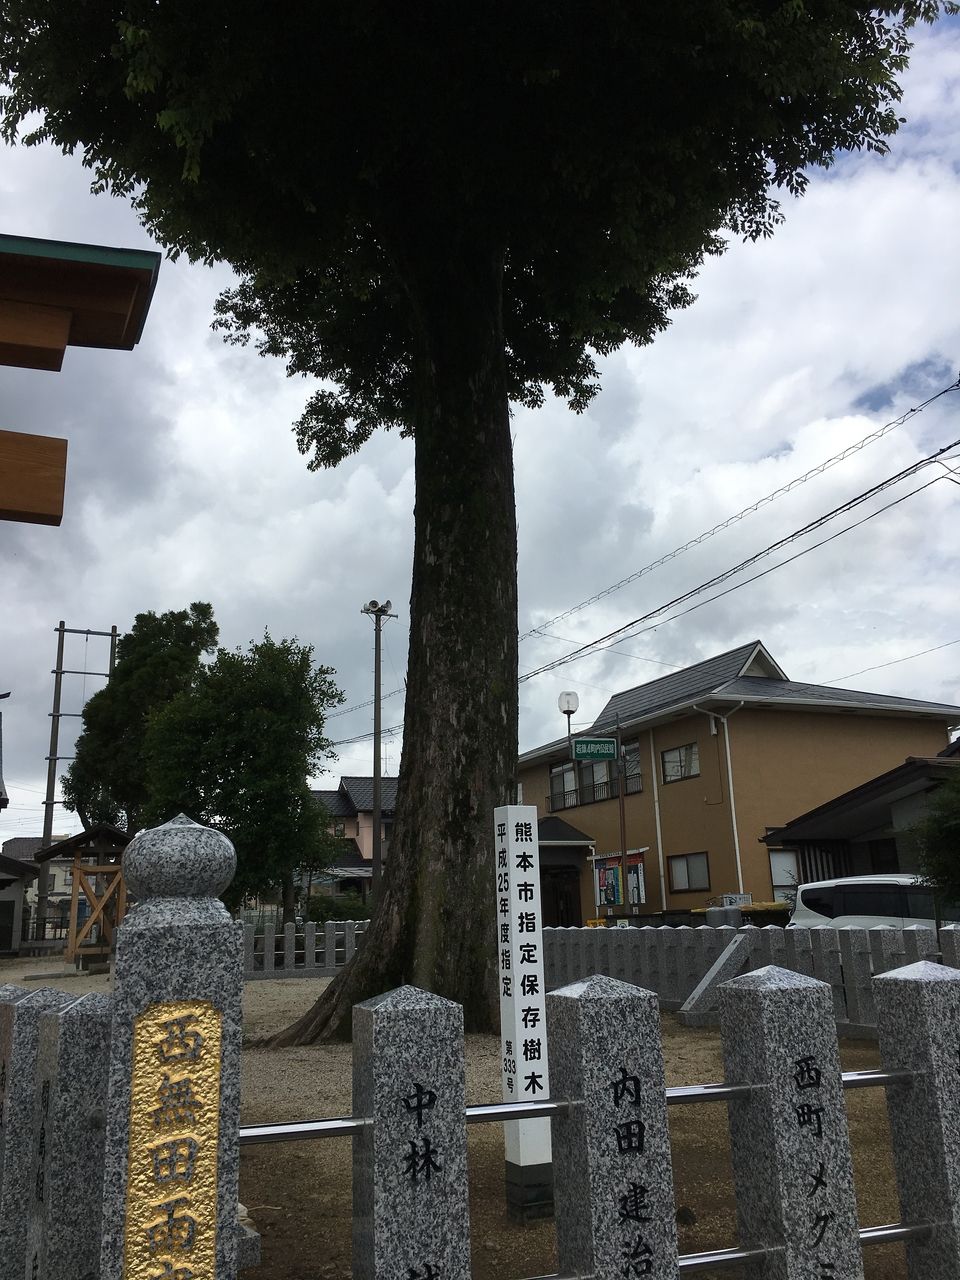 境内にそびえる熊本市指定保存樹木